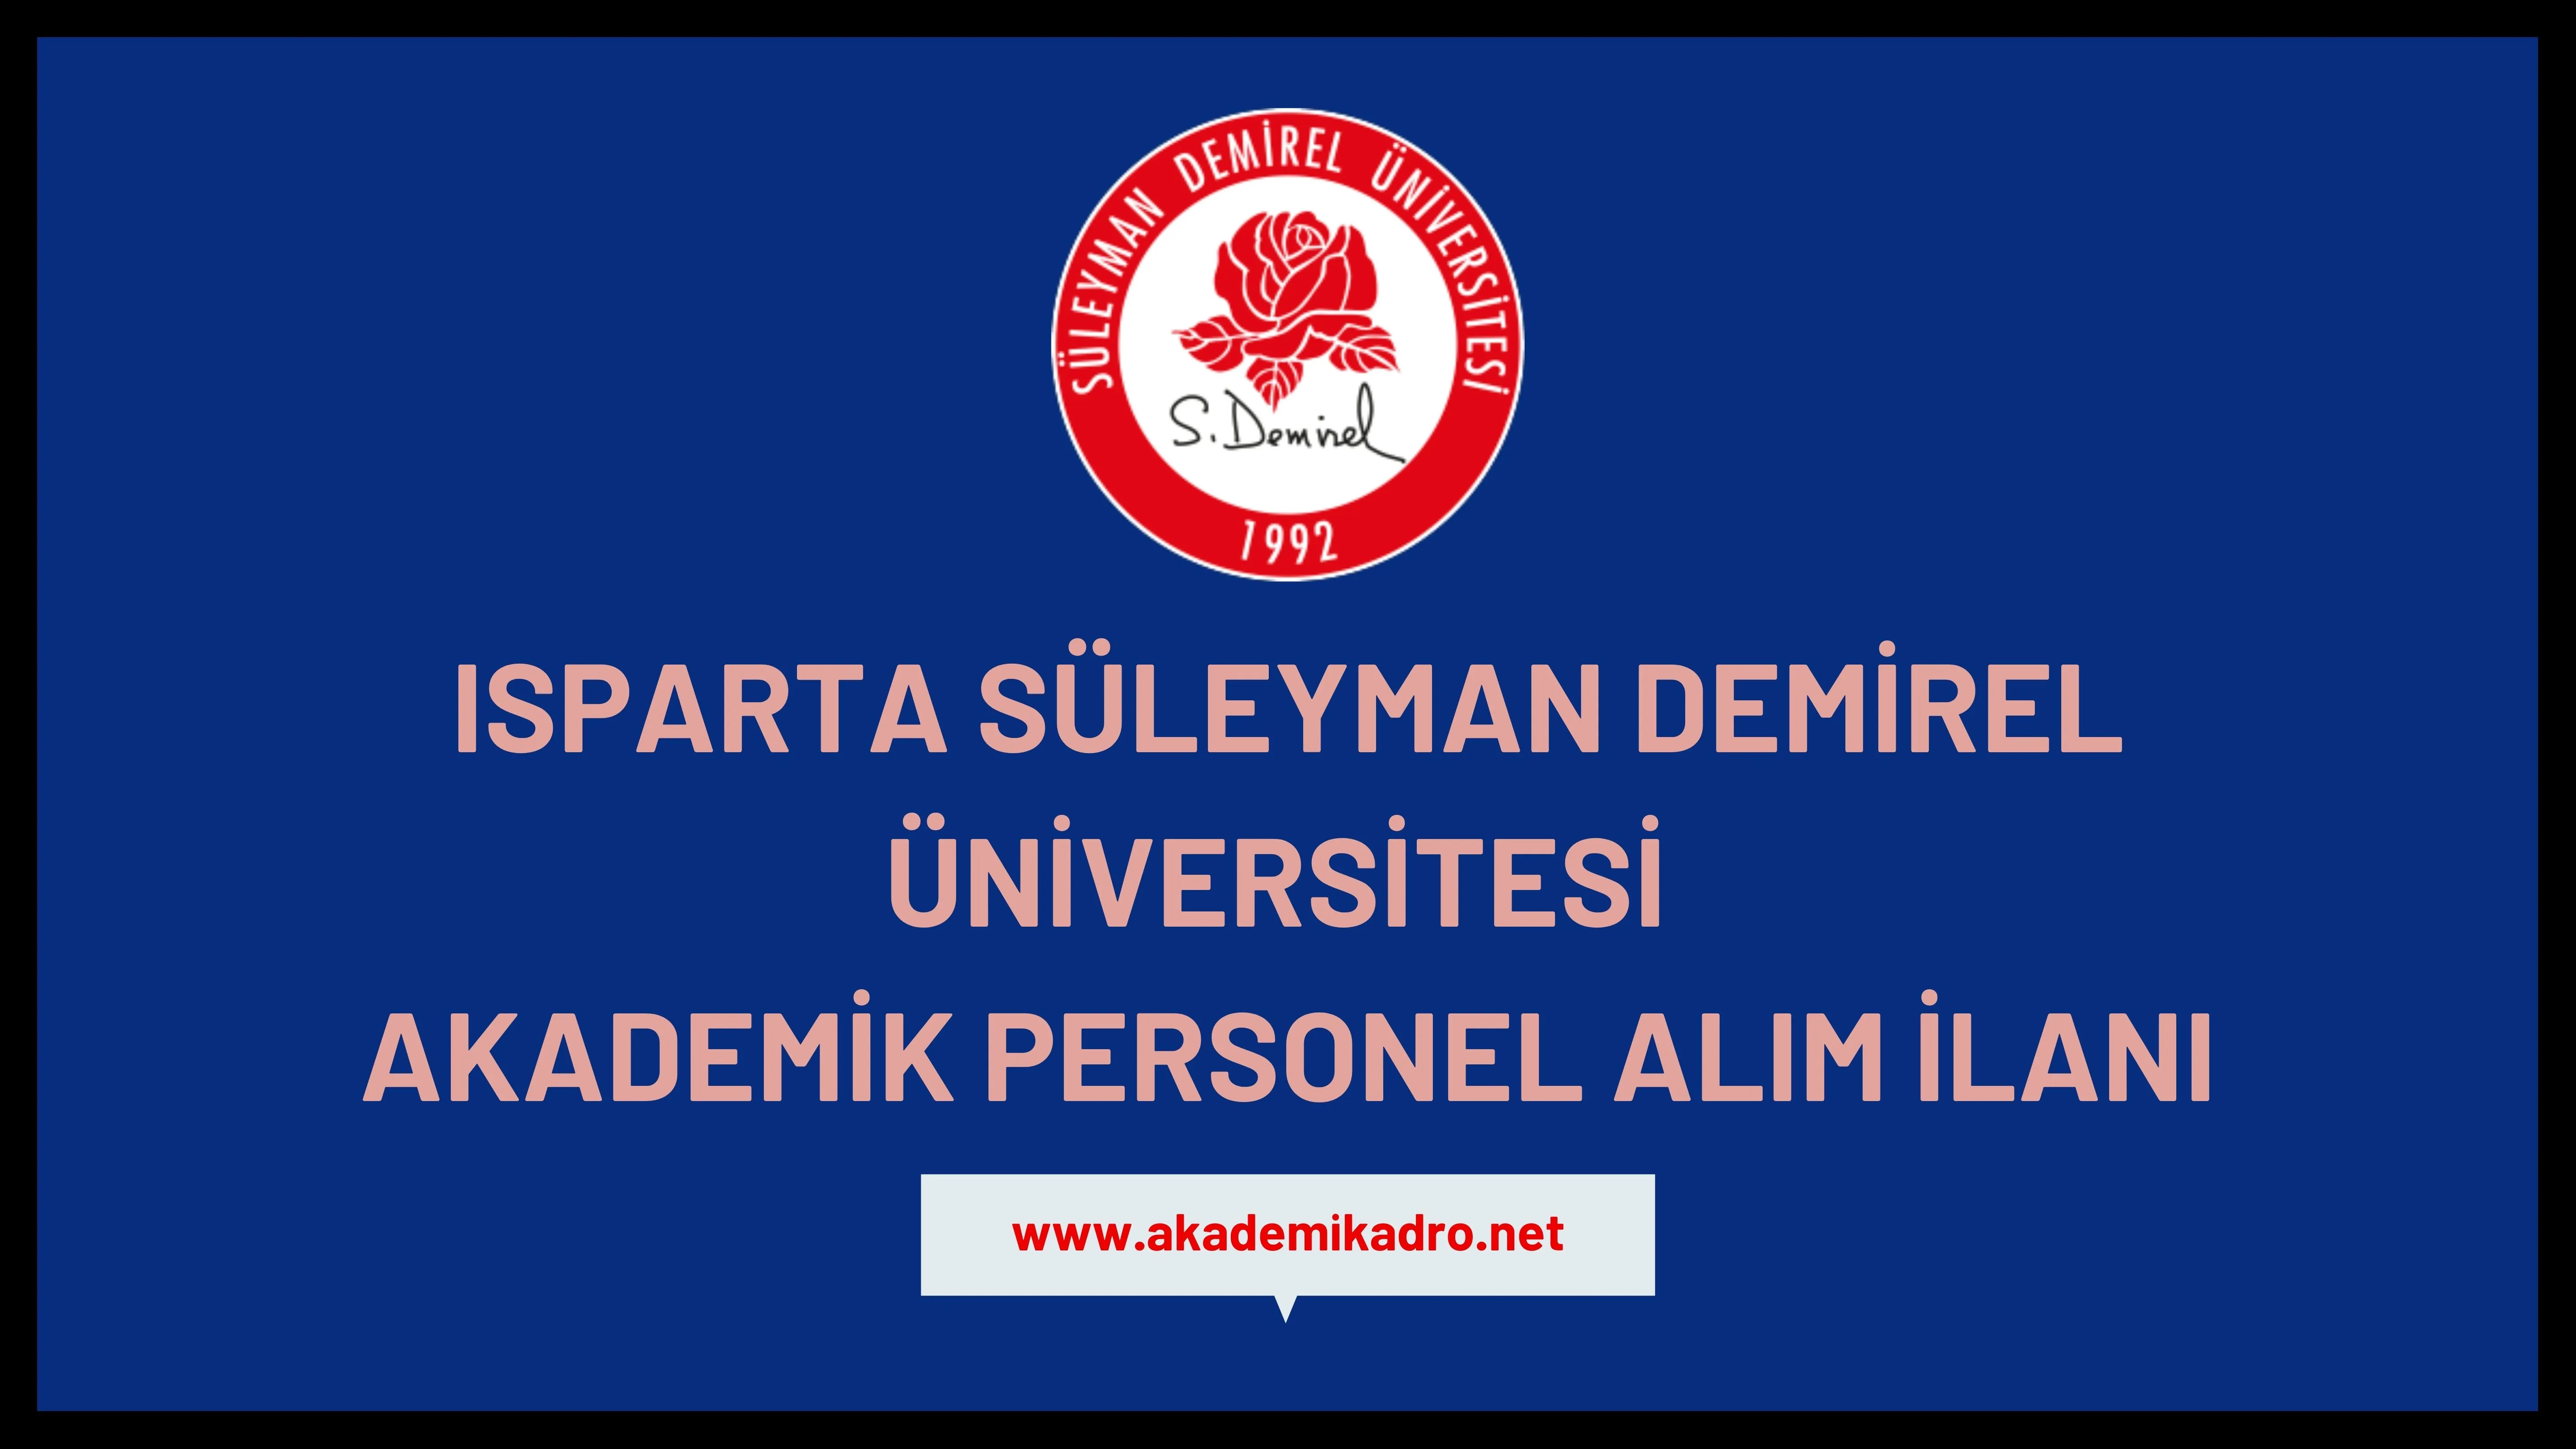 Süleyman Demirel Üniversitesi birçok alandan 20 akademik personel alacak.